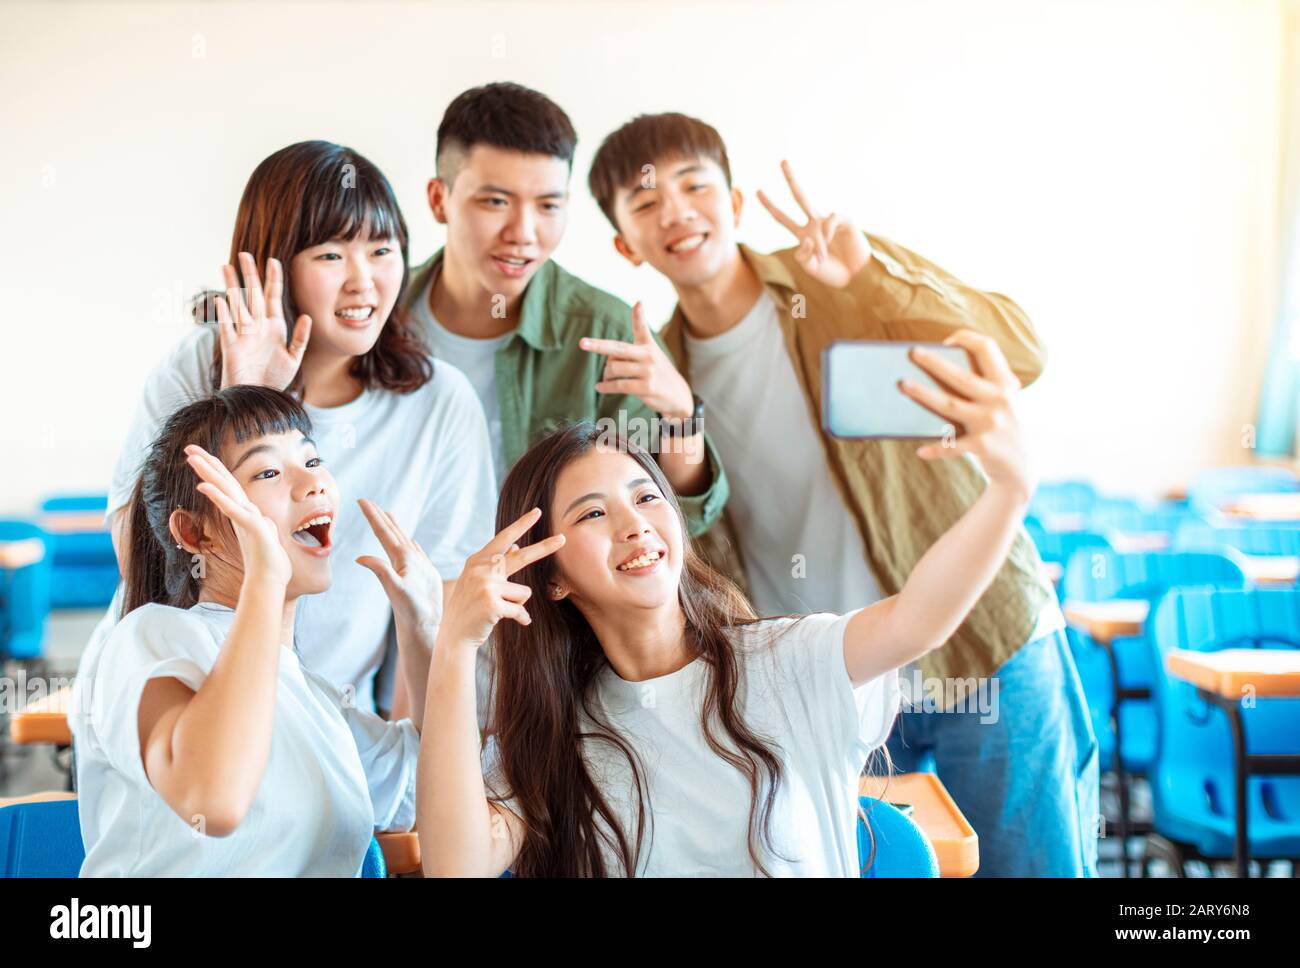 Fröhliche junge Gruppe von Teenagern, die Spaß an selfie im Klassenzimmer machen Stockfoto